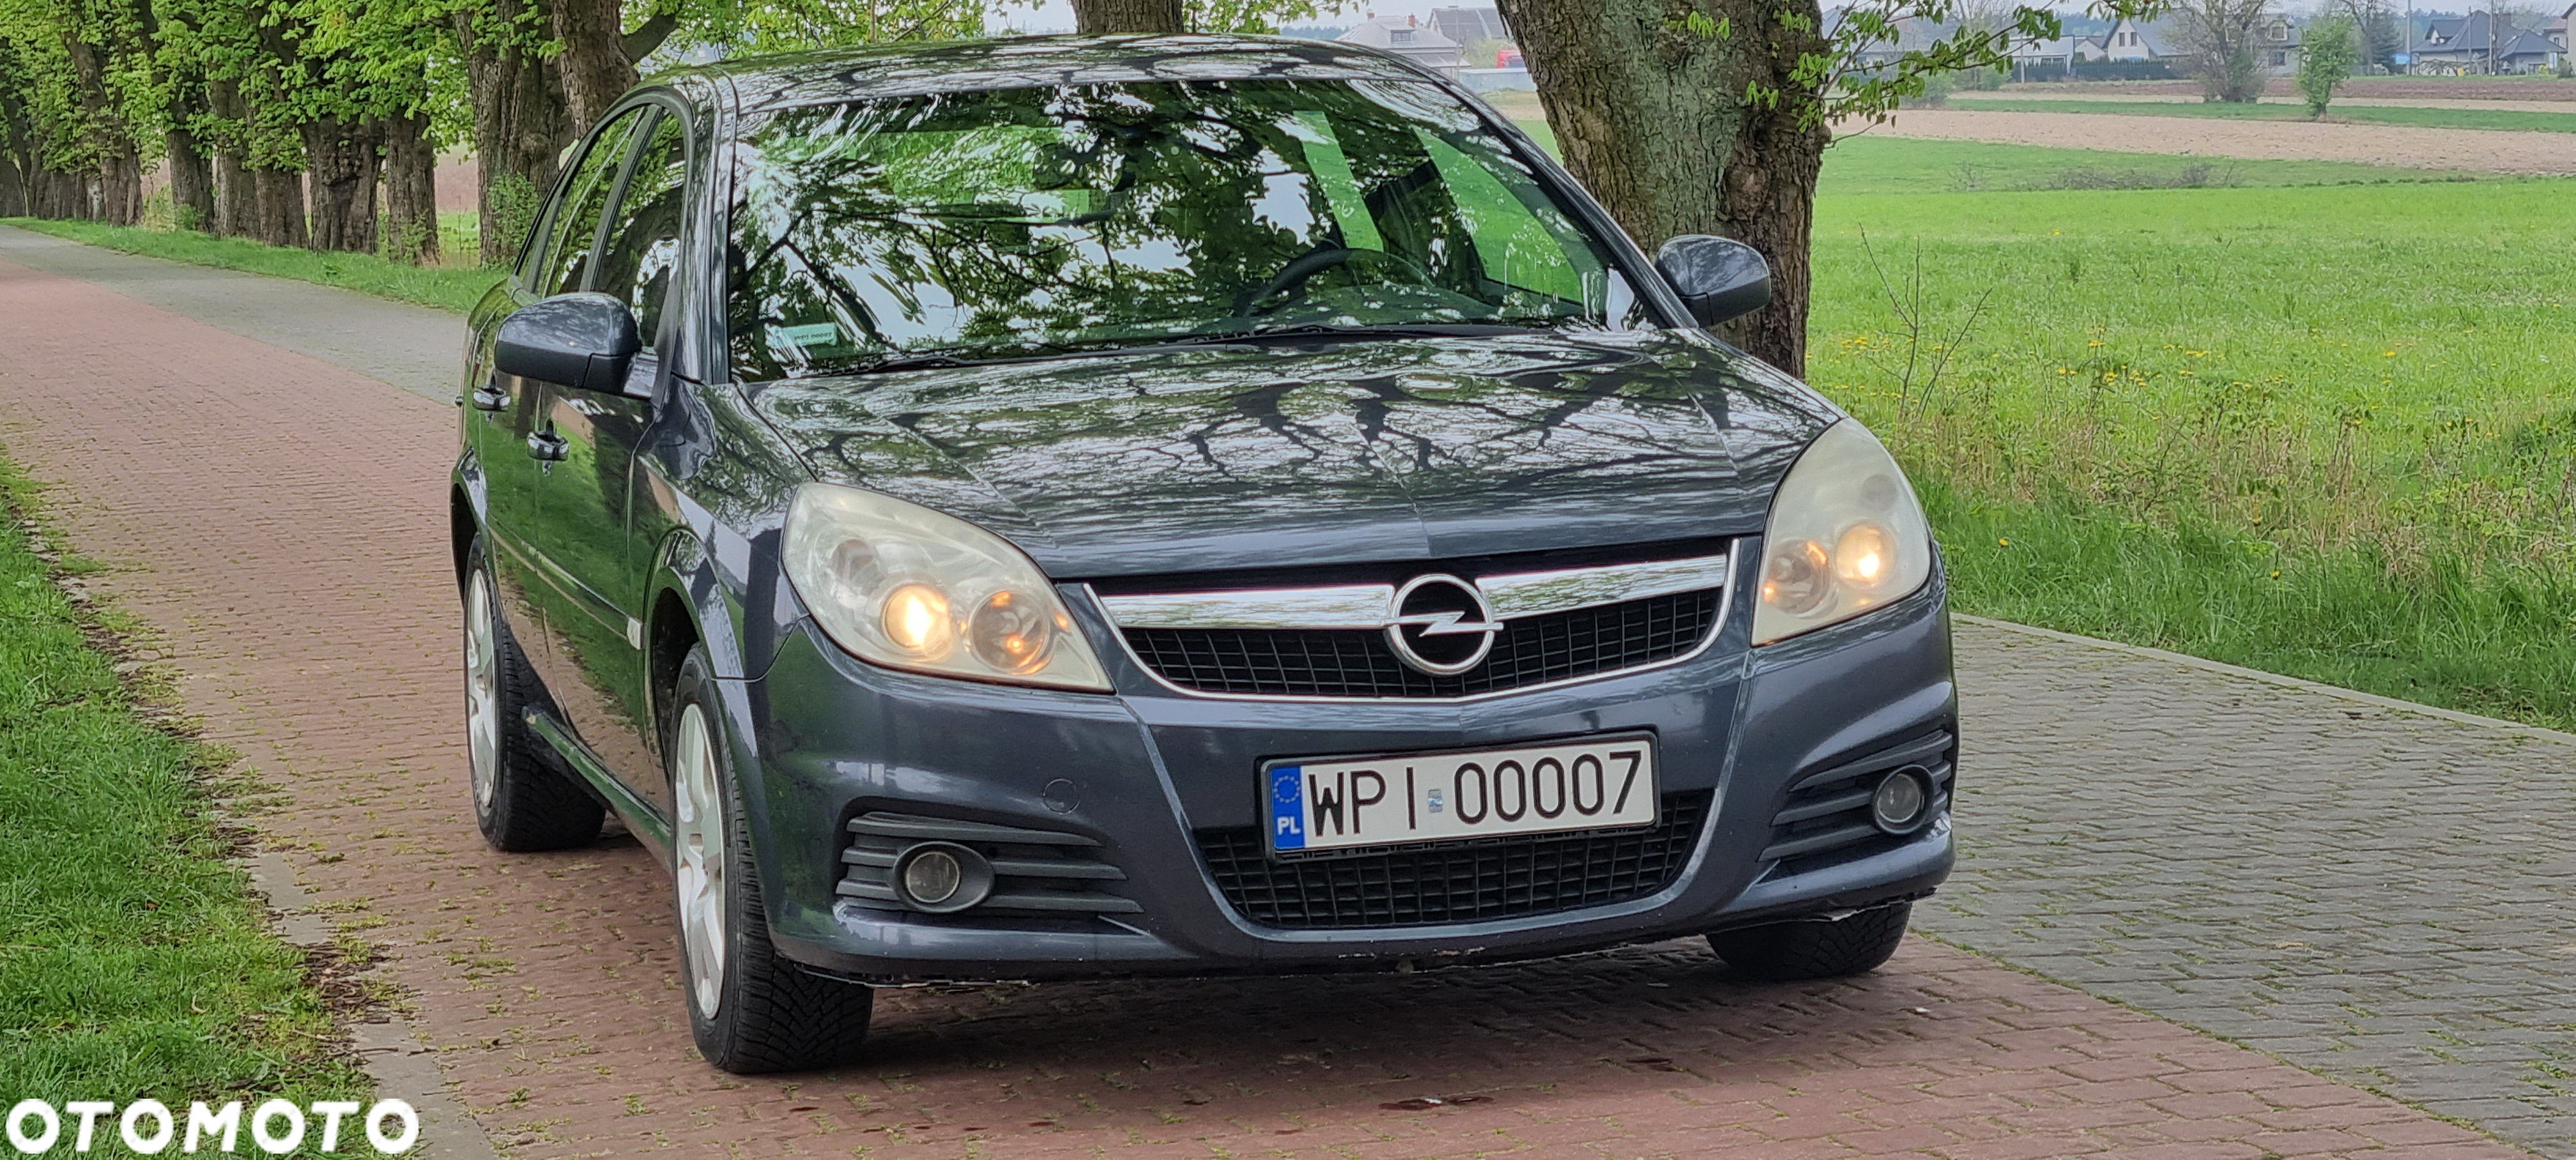 Opel Vectra 1.9 CDTI Sport - 21